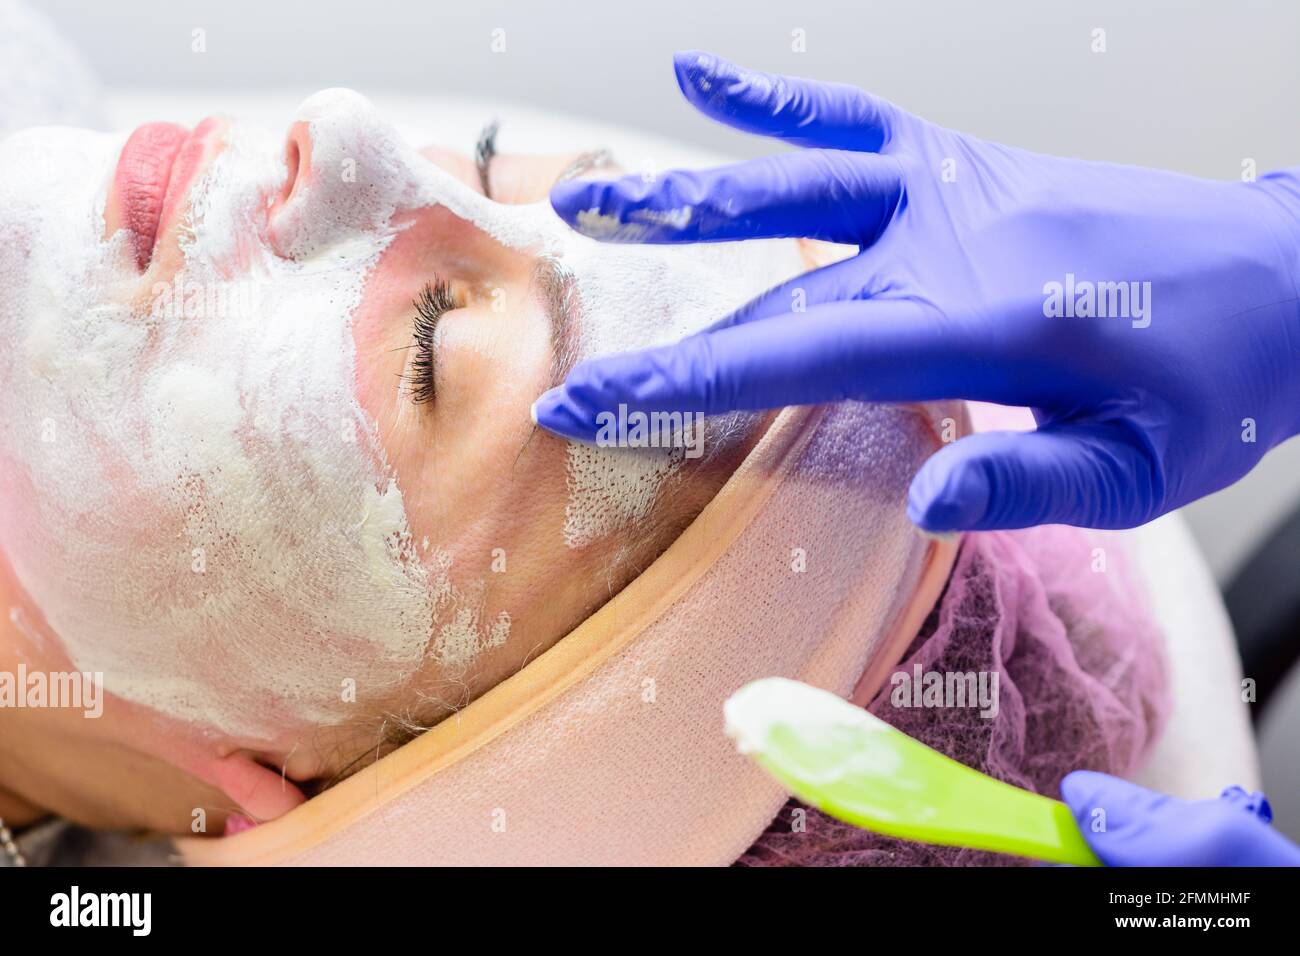 Crio-mask, una maschera per i pori di restringimento, che viene utilizzata come fase finale subito dopo la procedura di pulizia meccanica del viso. Novità Foto Stock